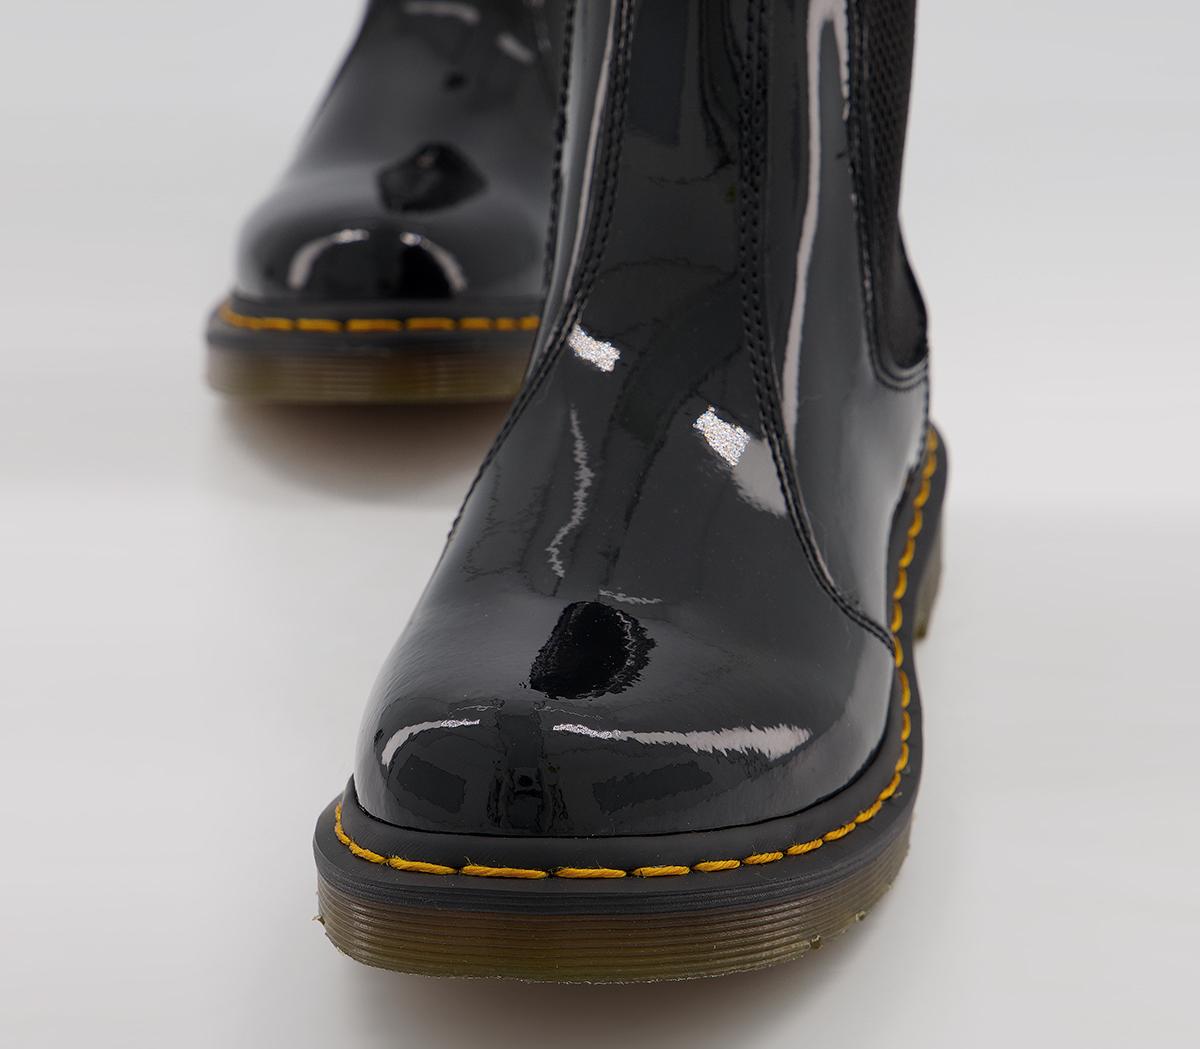 Dr. Martens 2976 Chelsea Boots Black Patent - Women's Ankle Boots